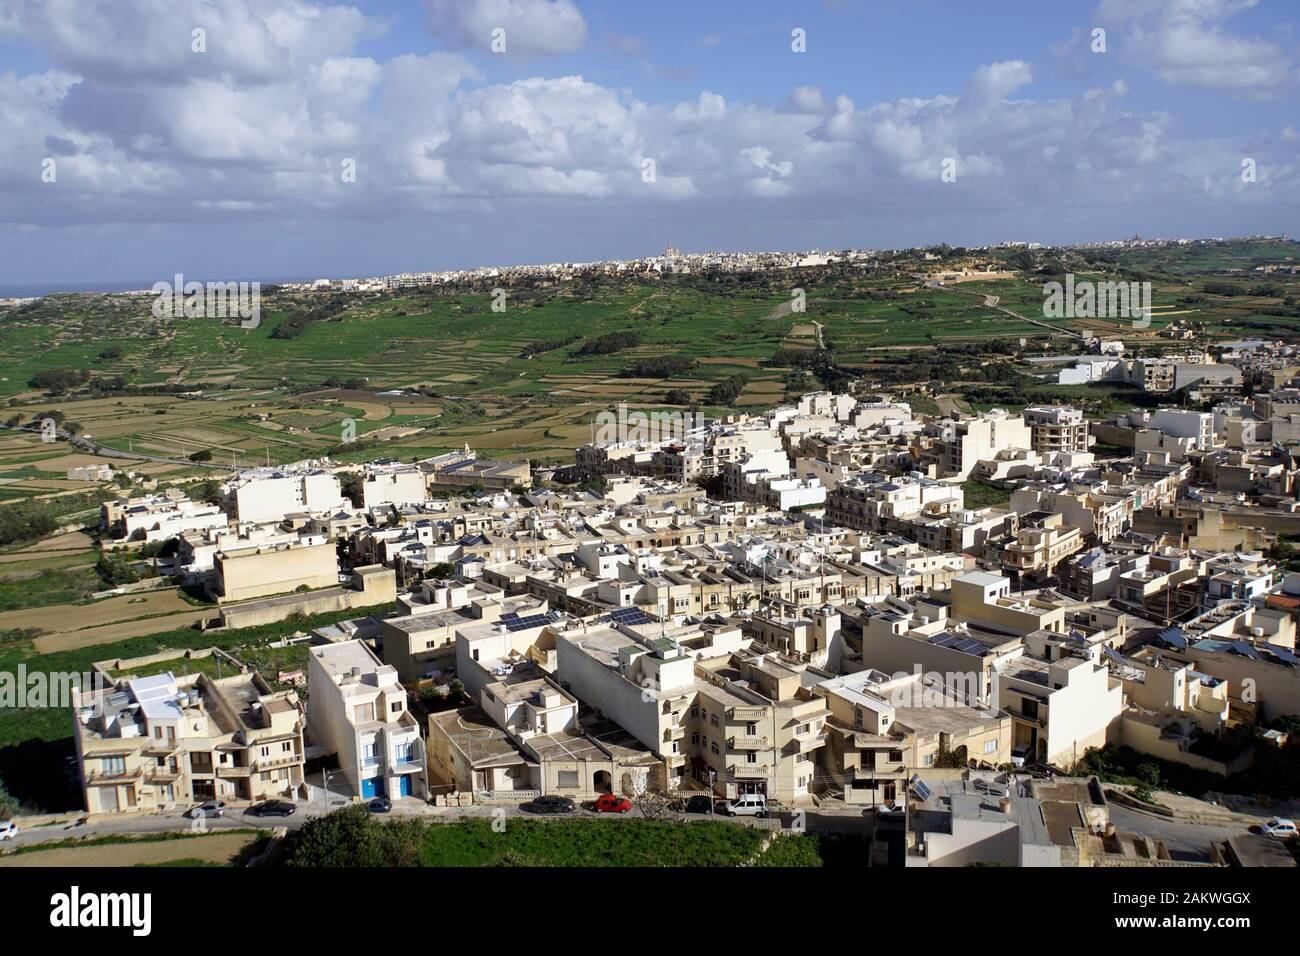 restaurierte historische Zitadelle über der Inselhauptstadt - Blick von der Festungsmauer über die Insel, Victoria (maltesische Ir-Rabat Ghawdex), Goz Stock Photo